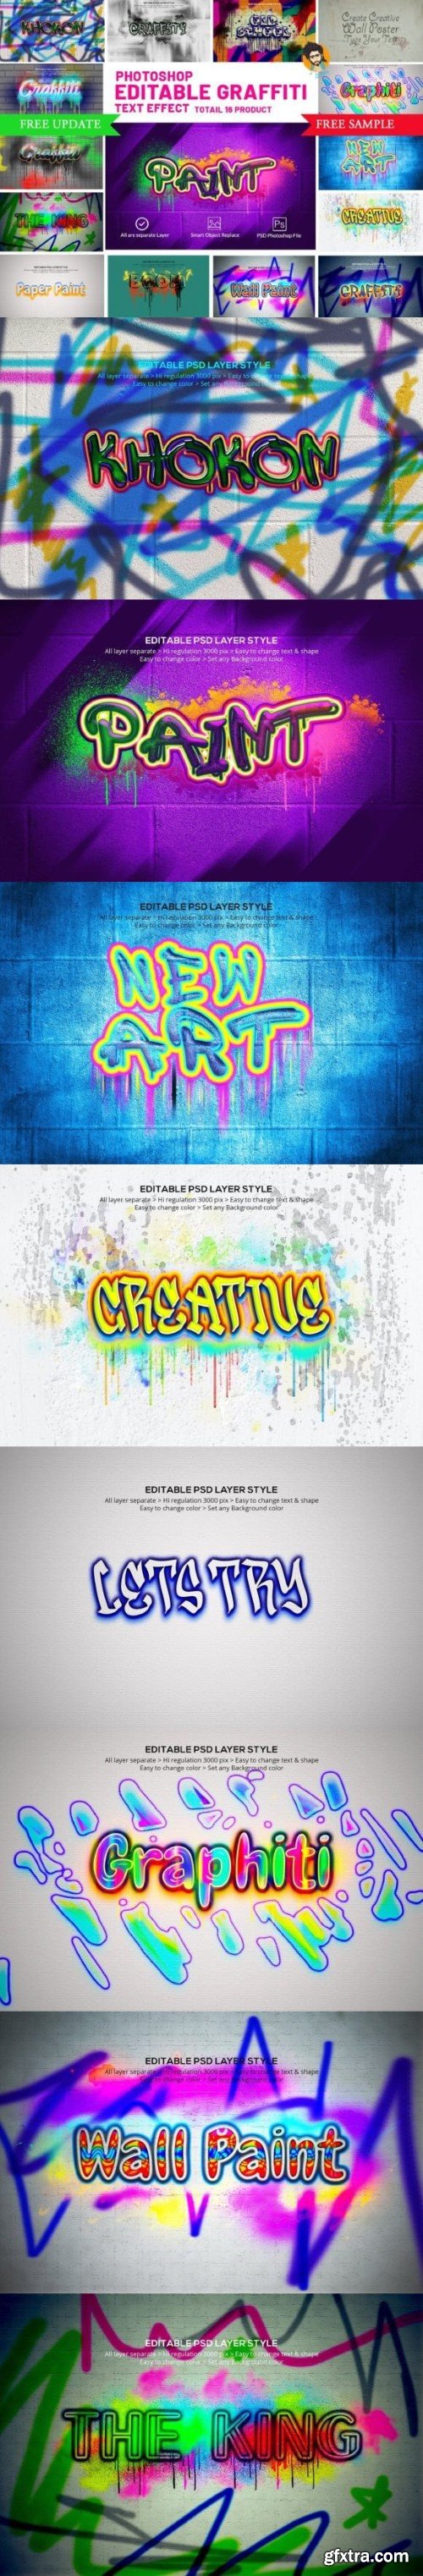 Photoshop Graffiti Text Effect